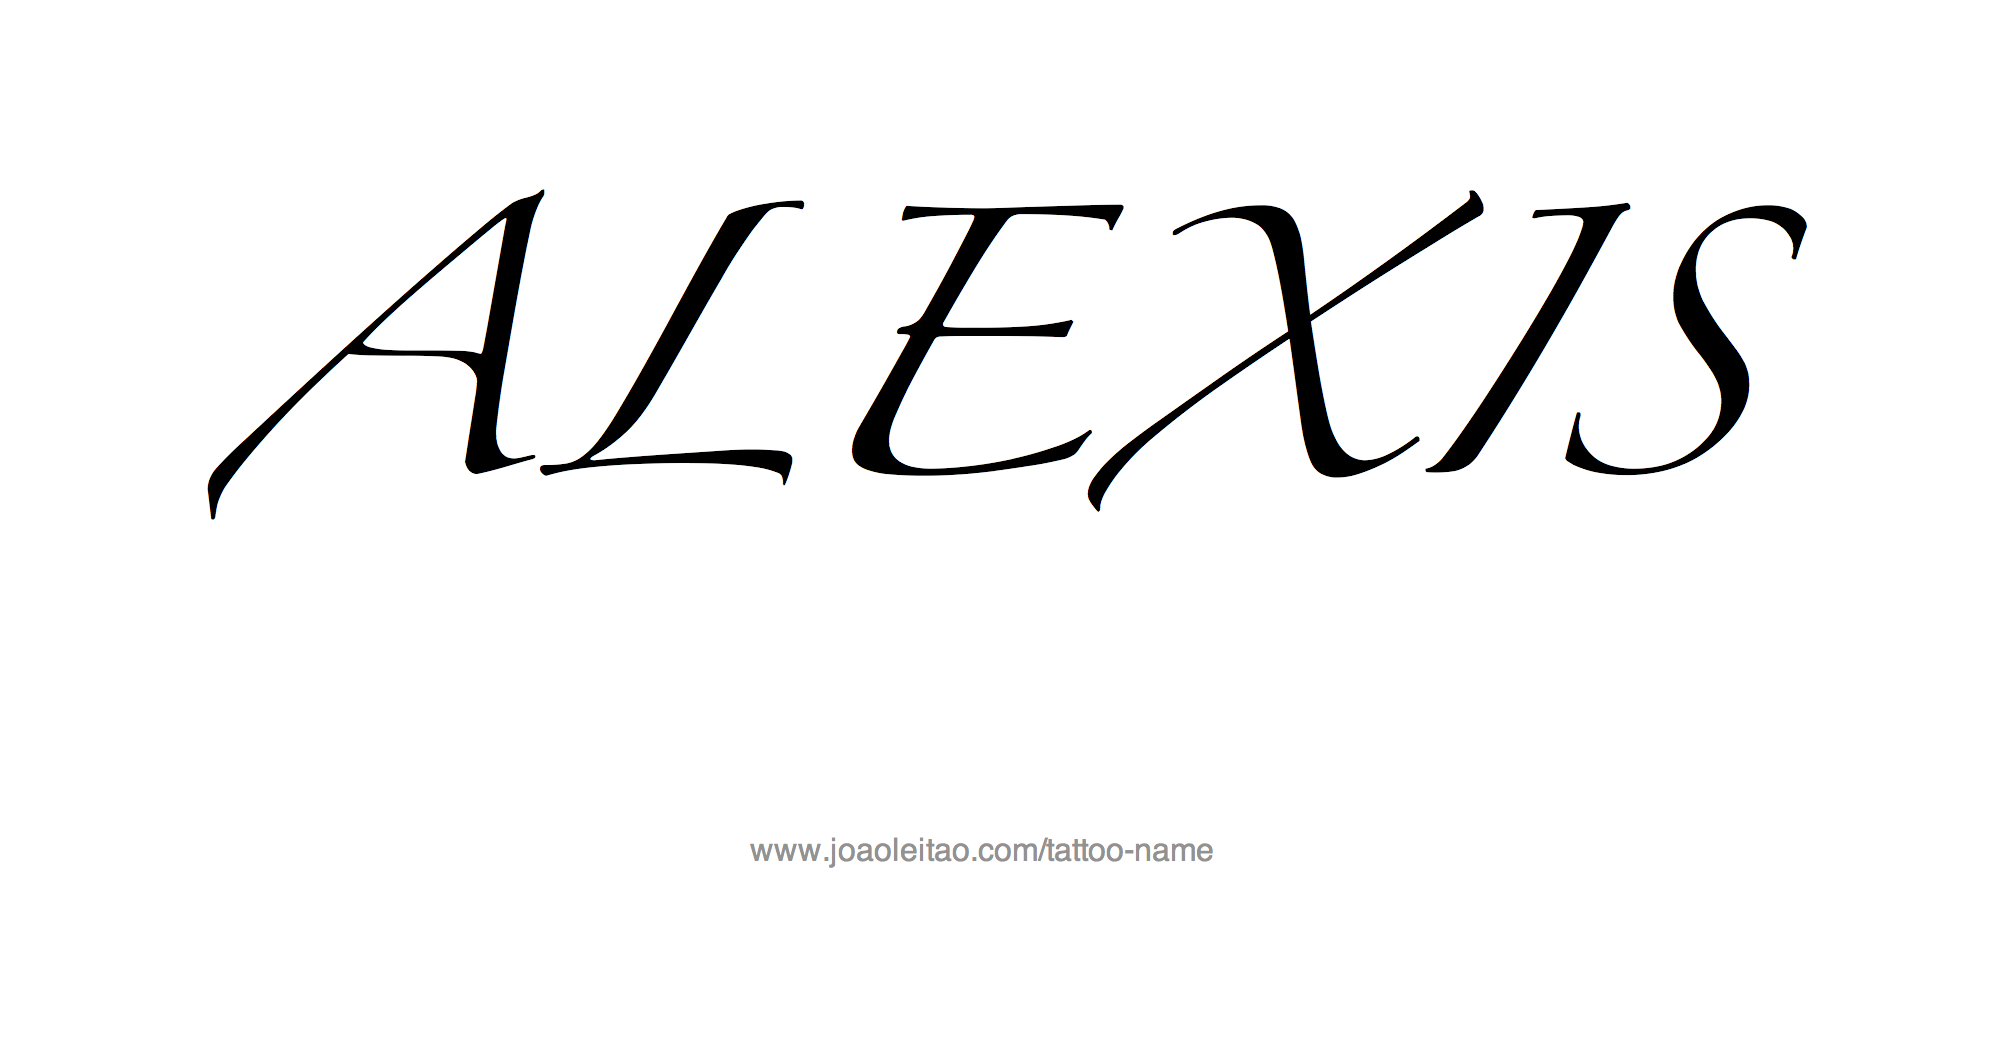 Alexis Name Tattoo Designs